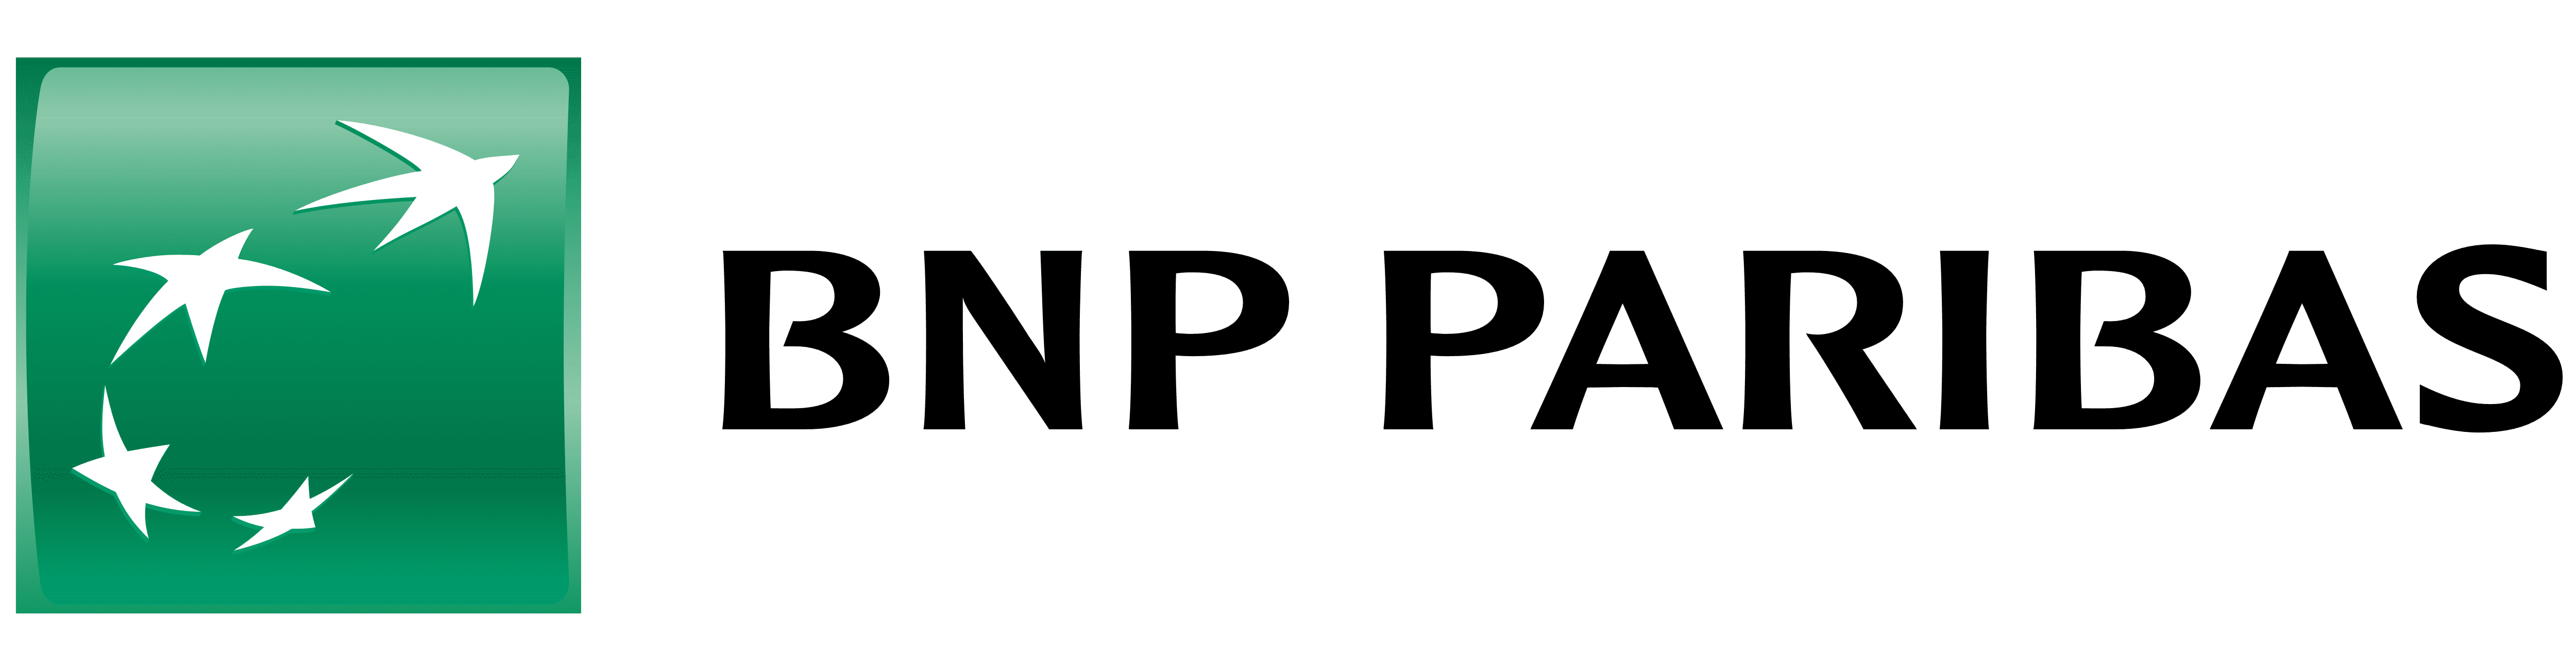 BNP-Paribas.png